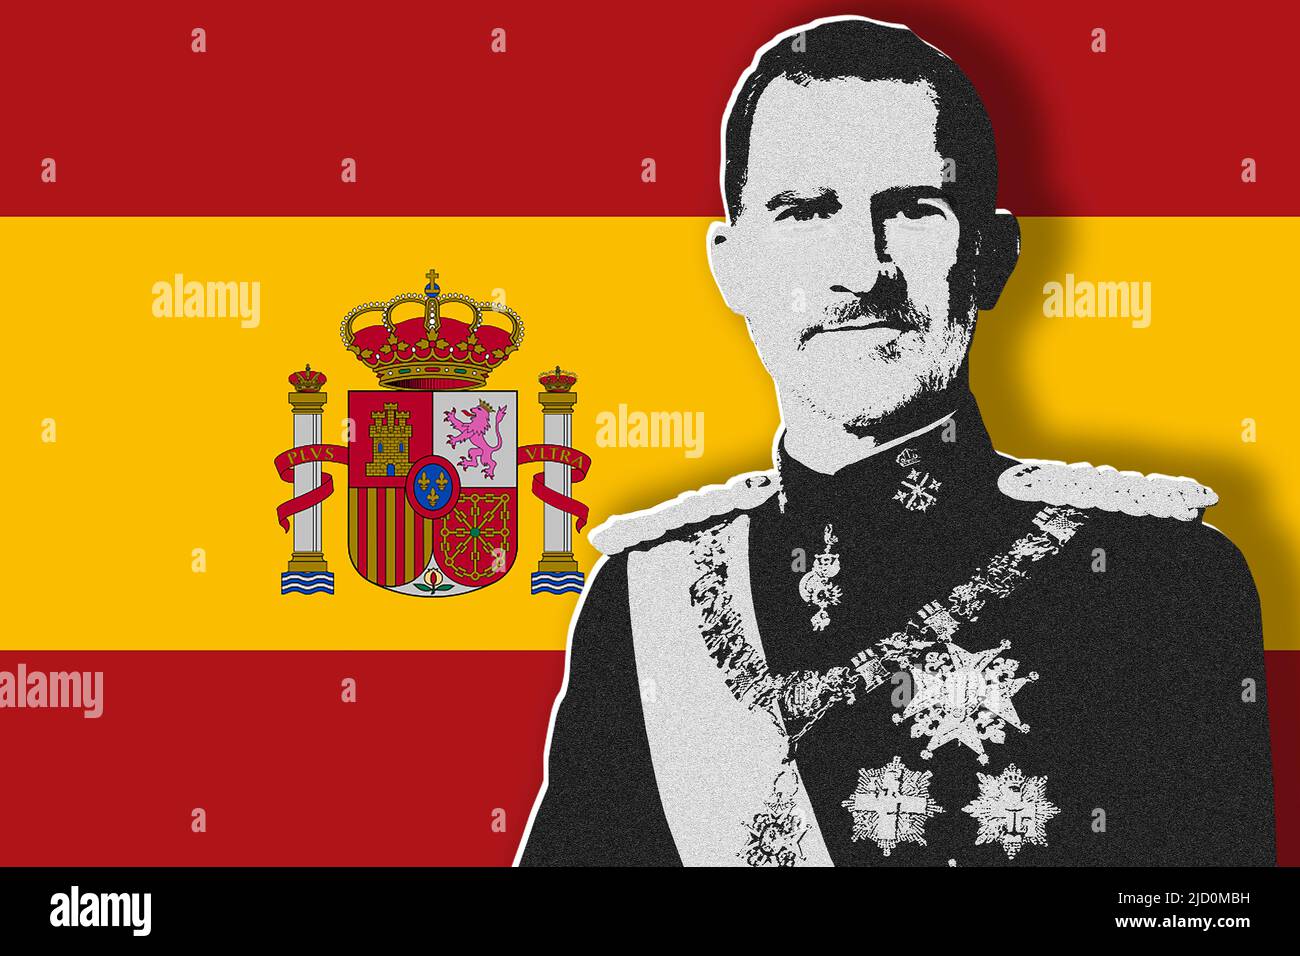 King Felipe VI and flag of Spain Stock Photo